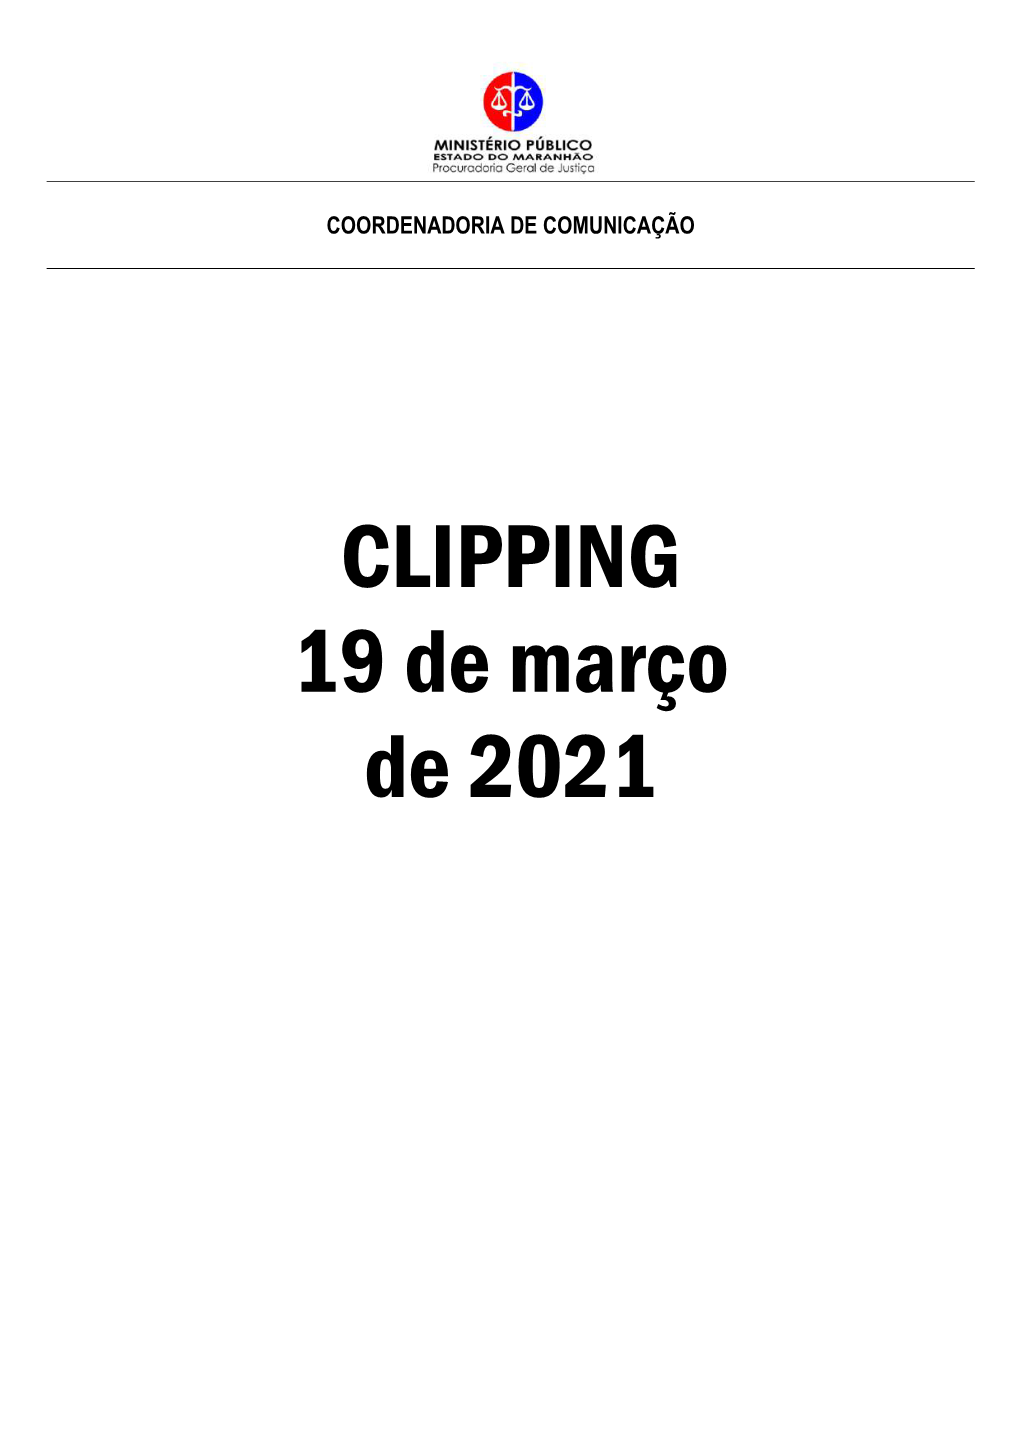 CLIPPING 19 De Março De 2021 O IMPARCIAL / MA - NOTÍCIAS - Pág.: 08